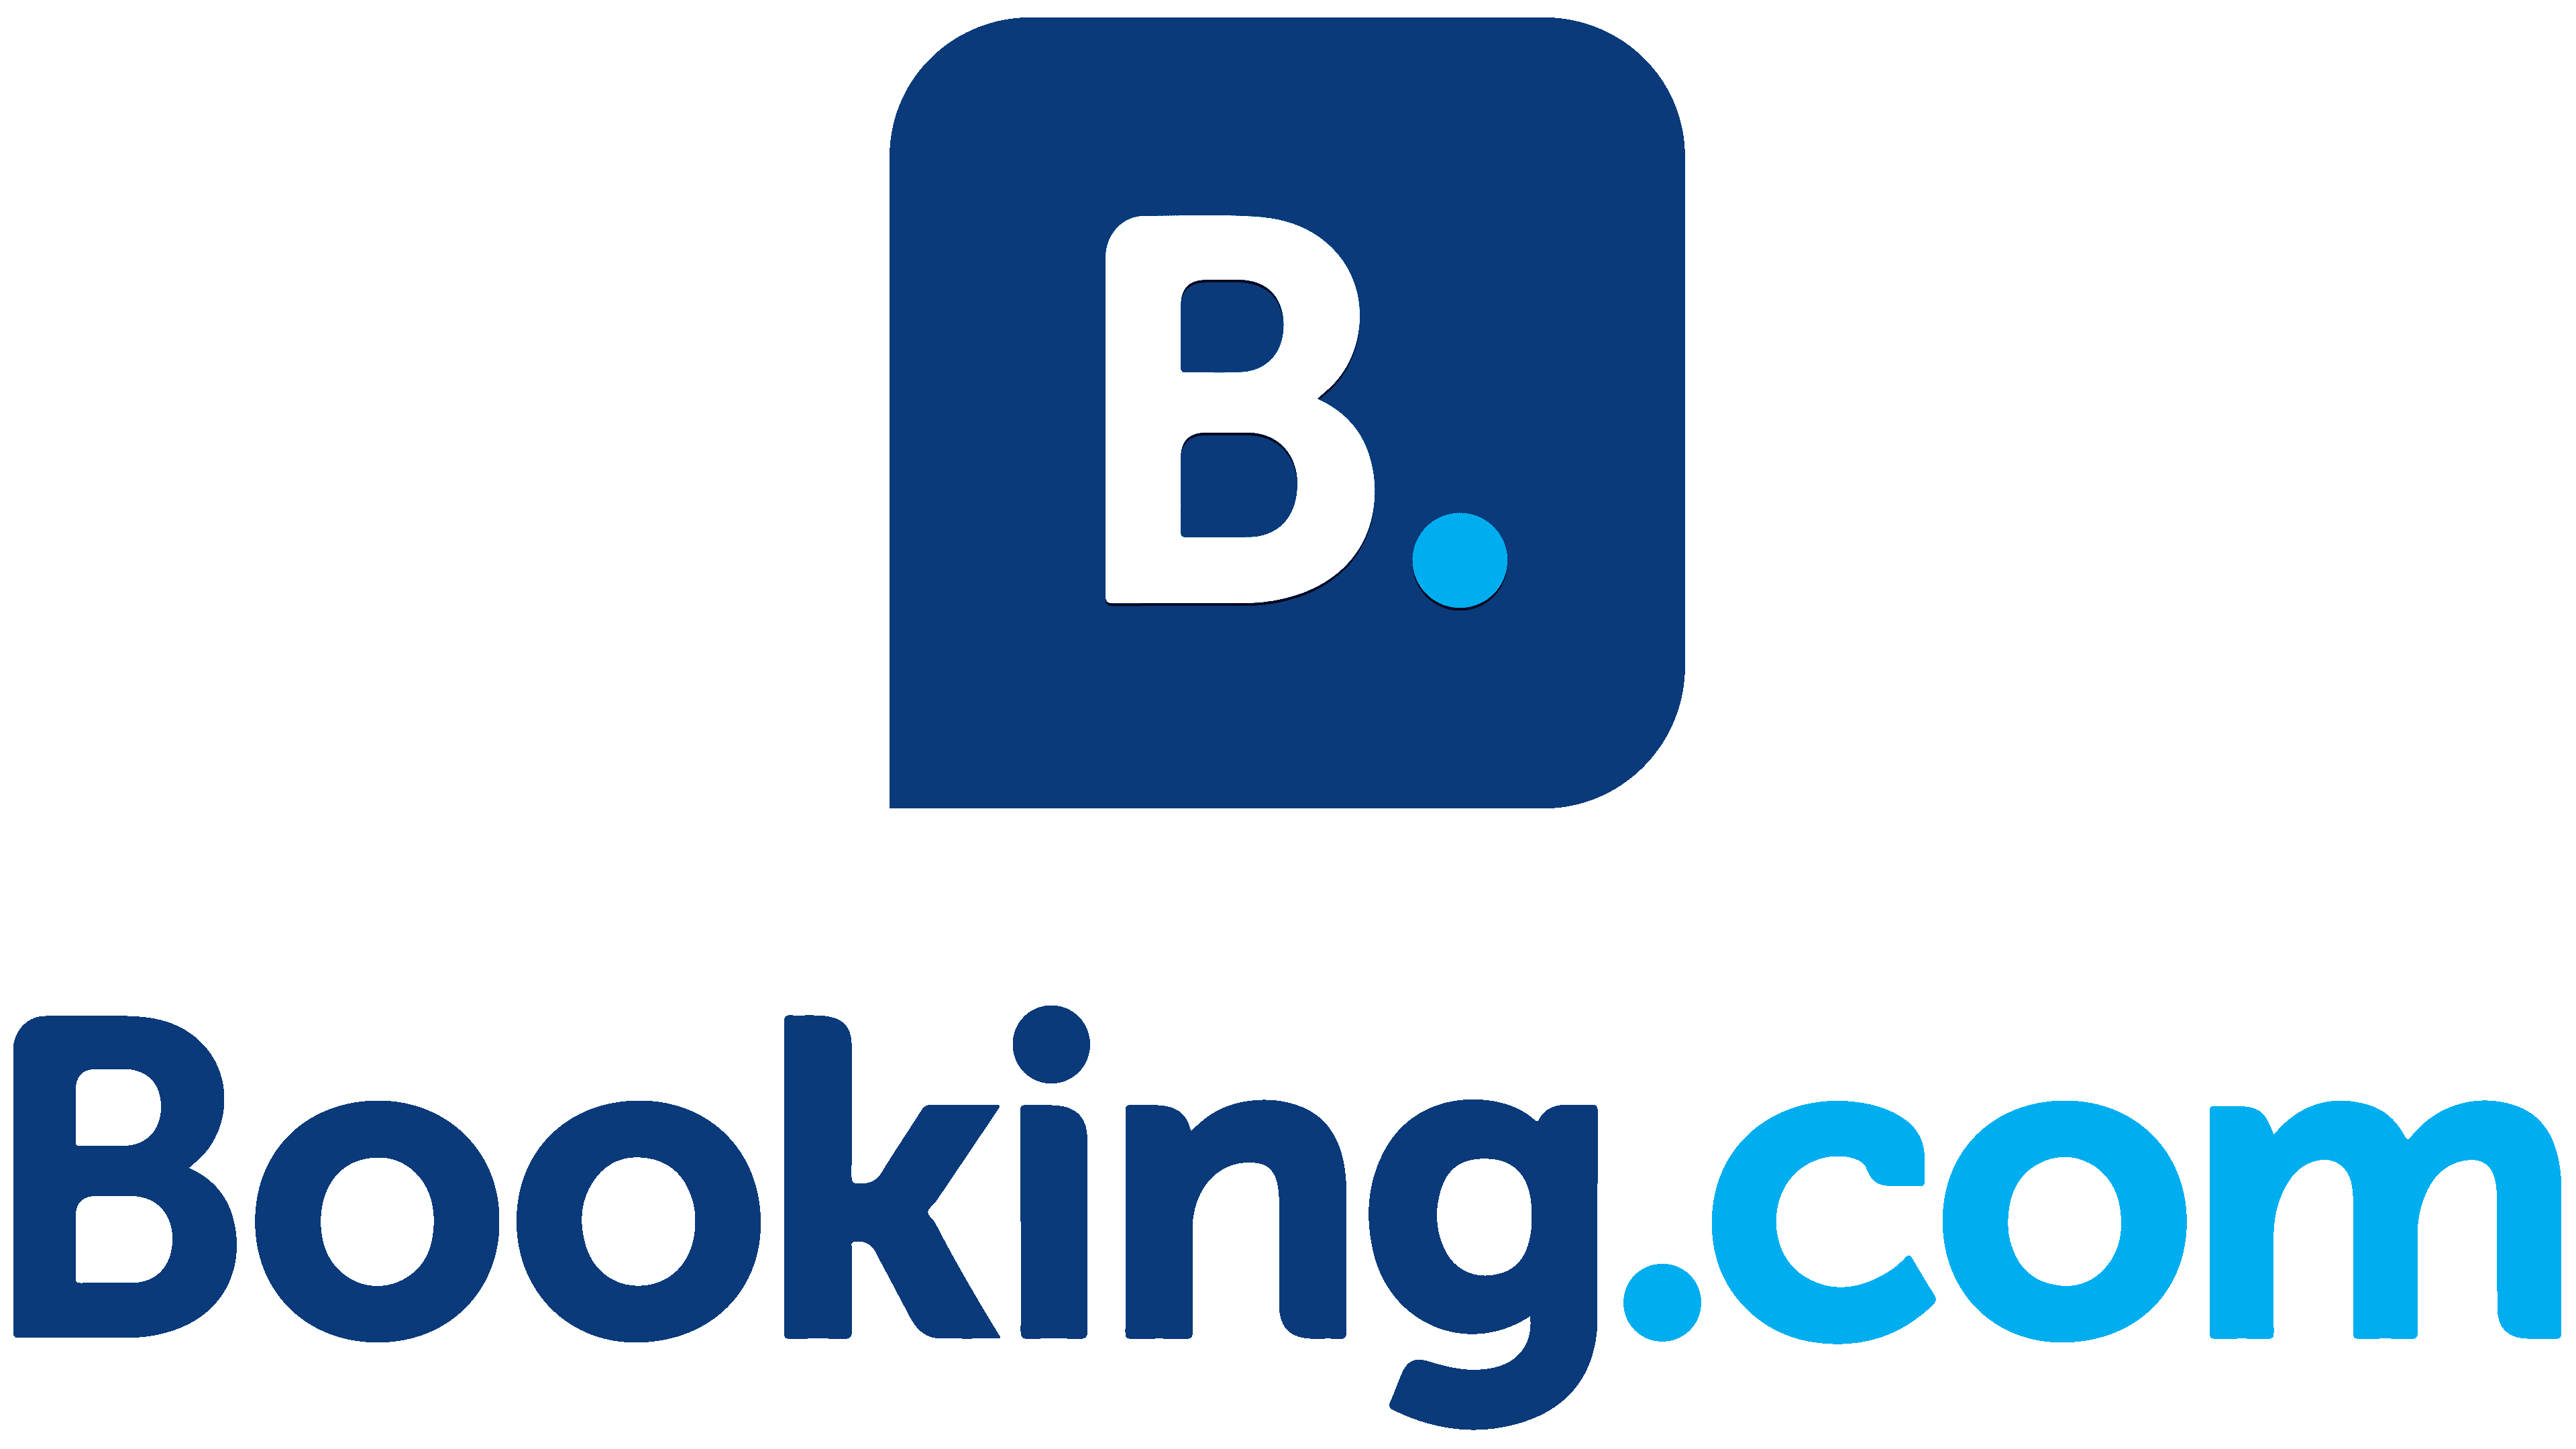 Booking-com Logging in